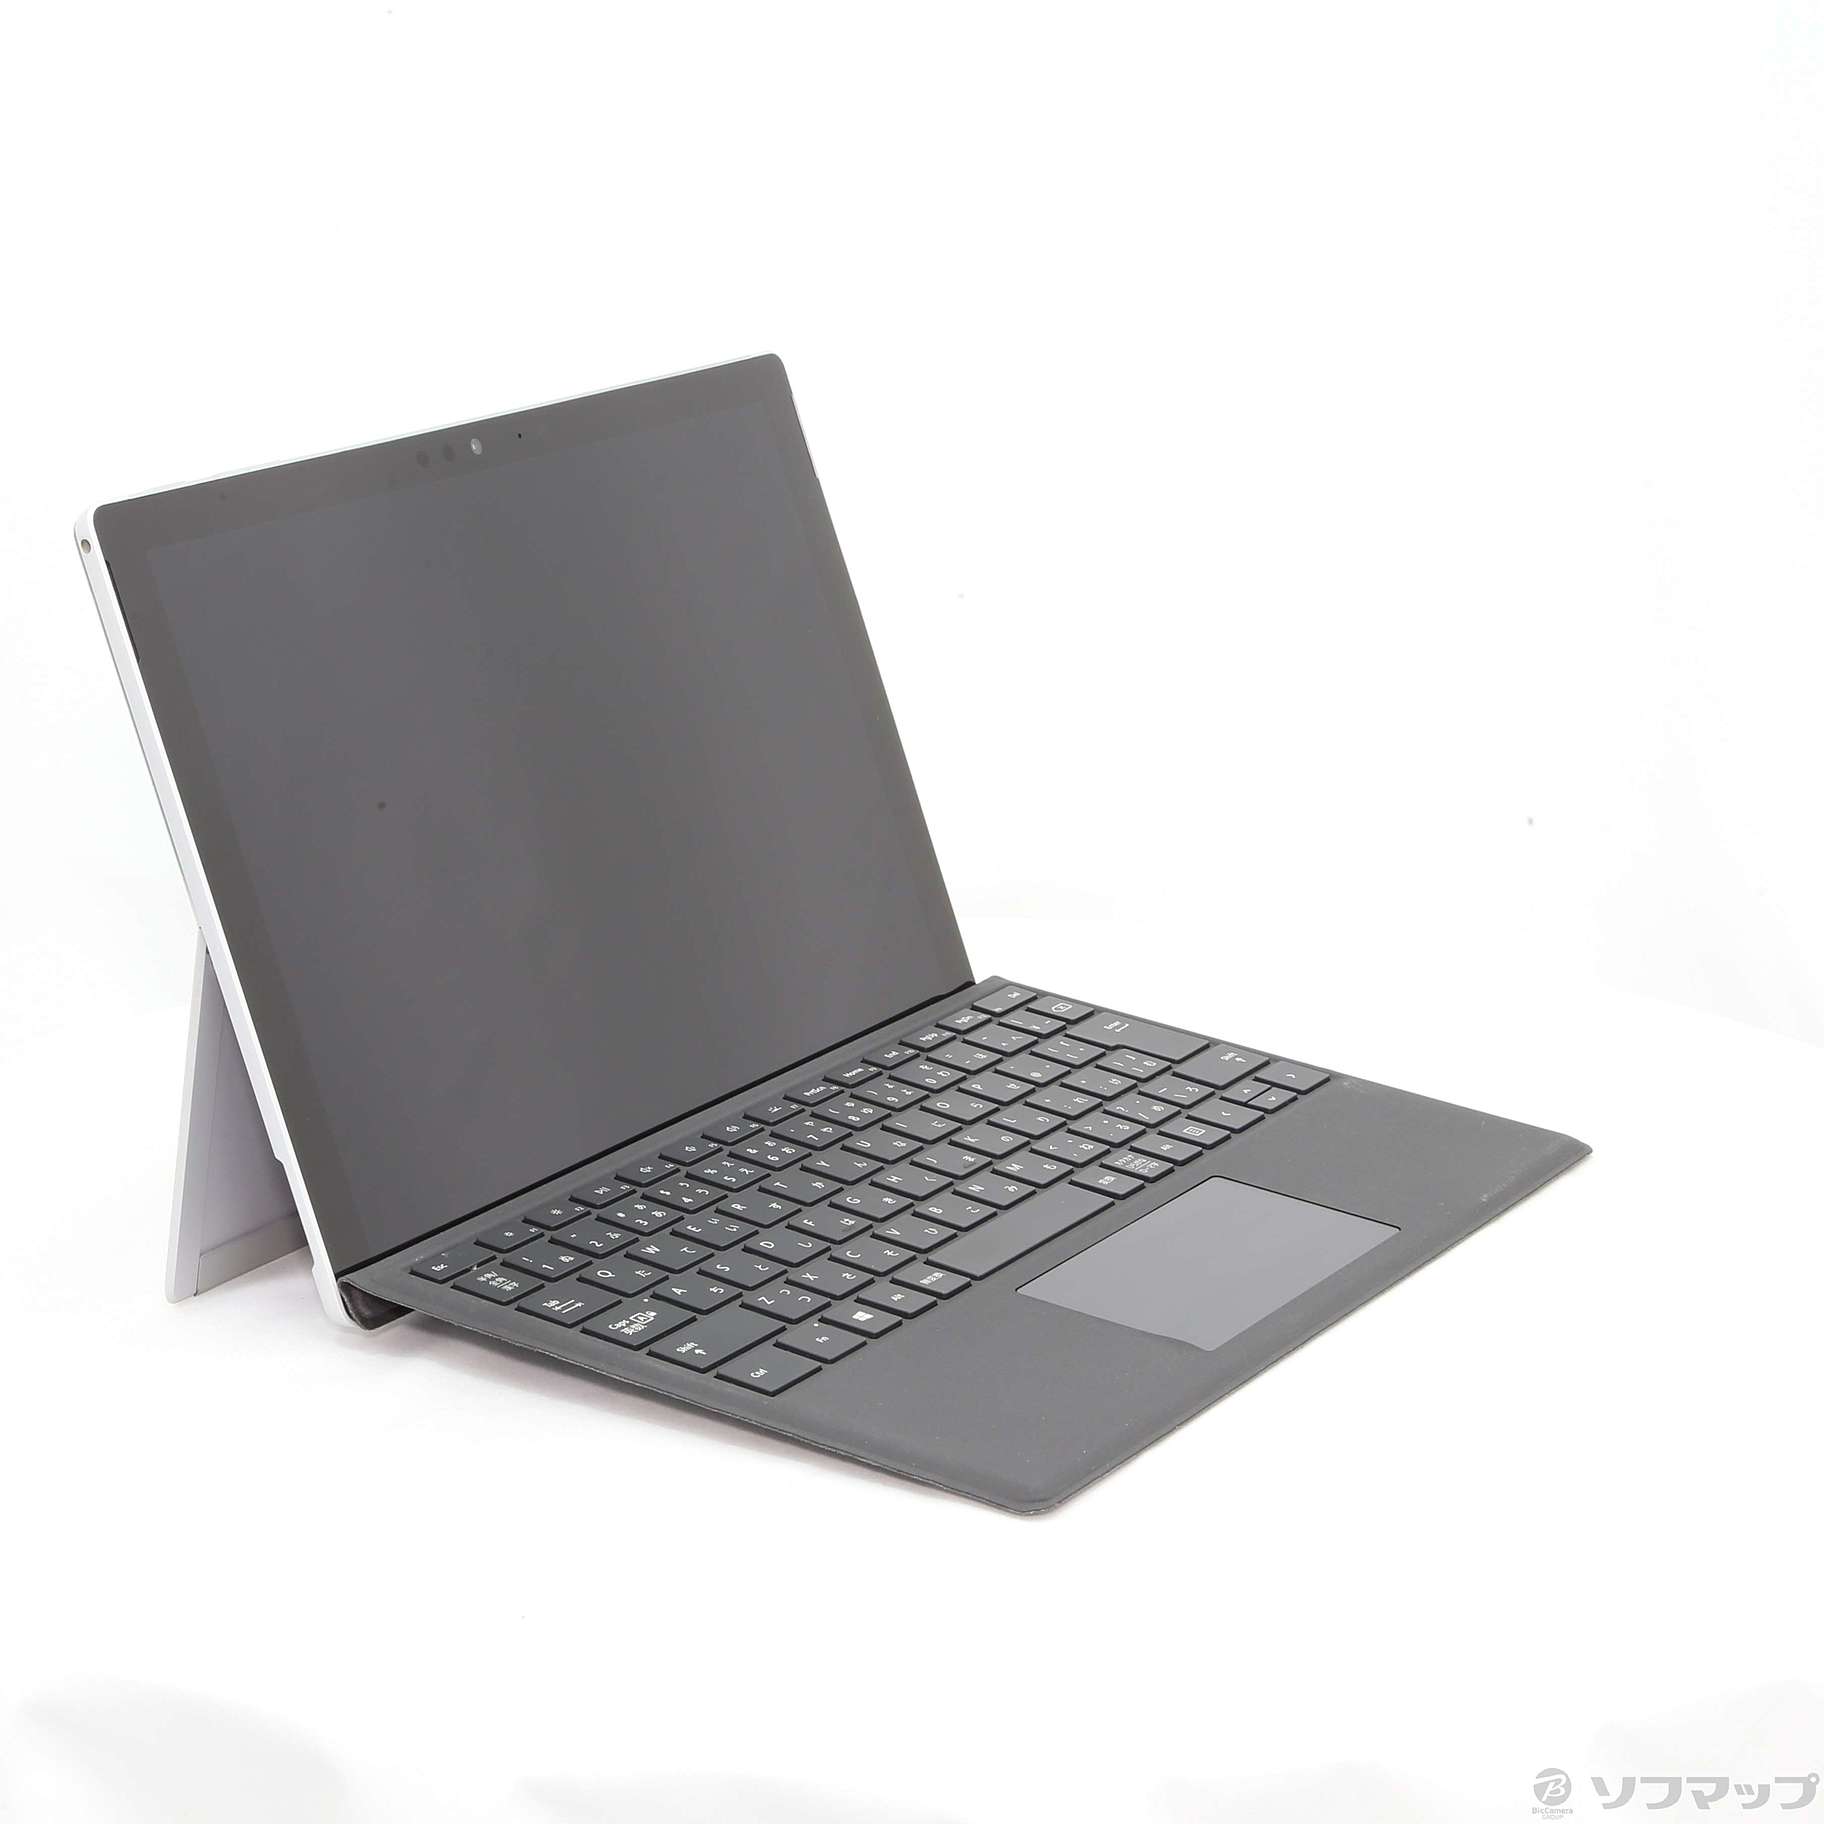 Surface Pro タイプカバー同梱 HGG-00019 www.krushichang.com